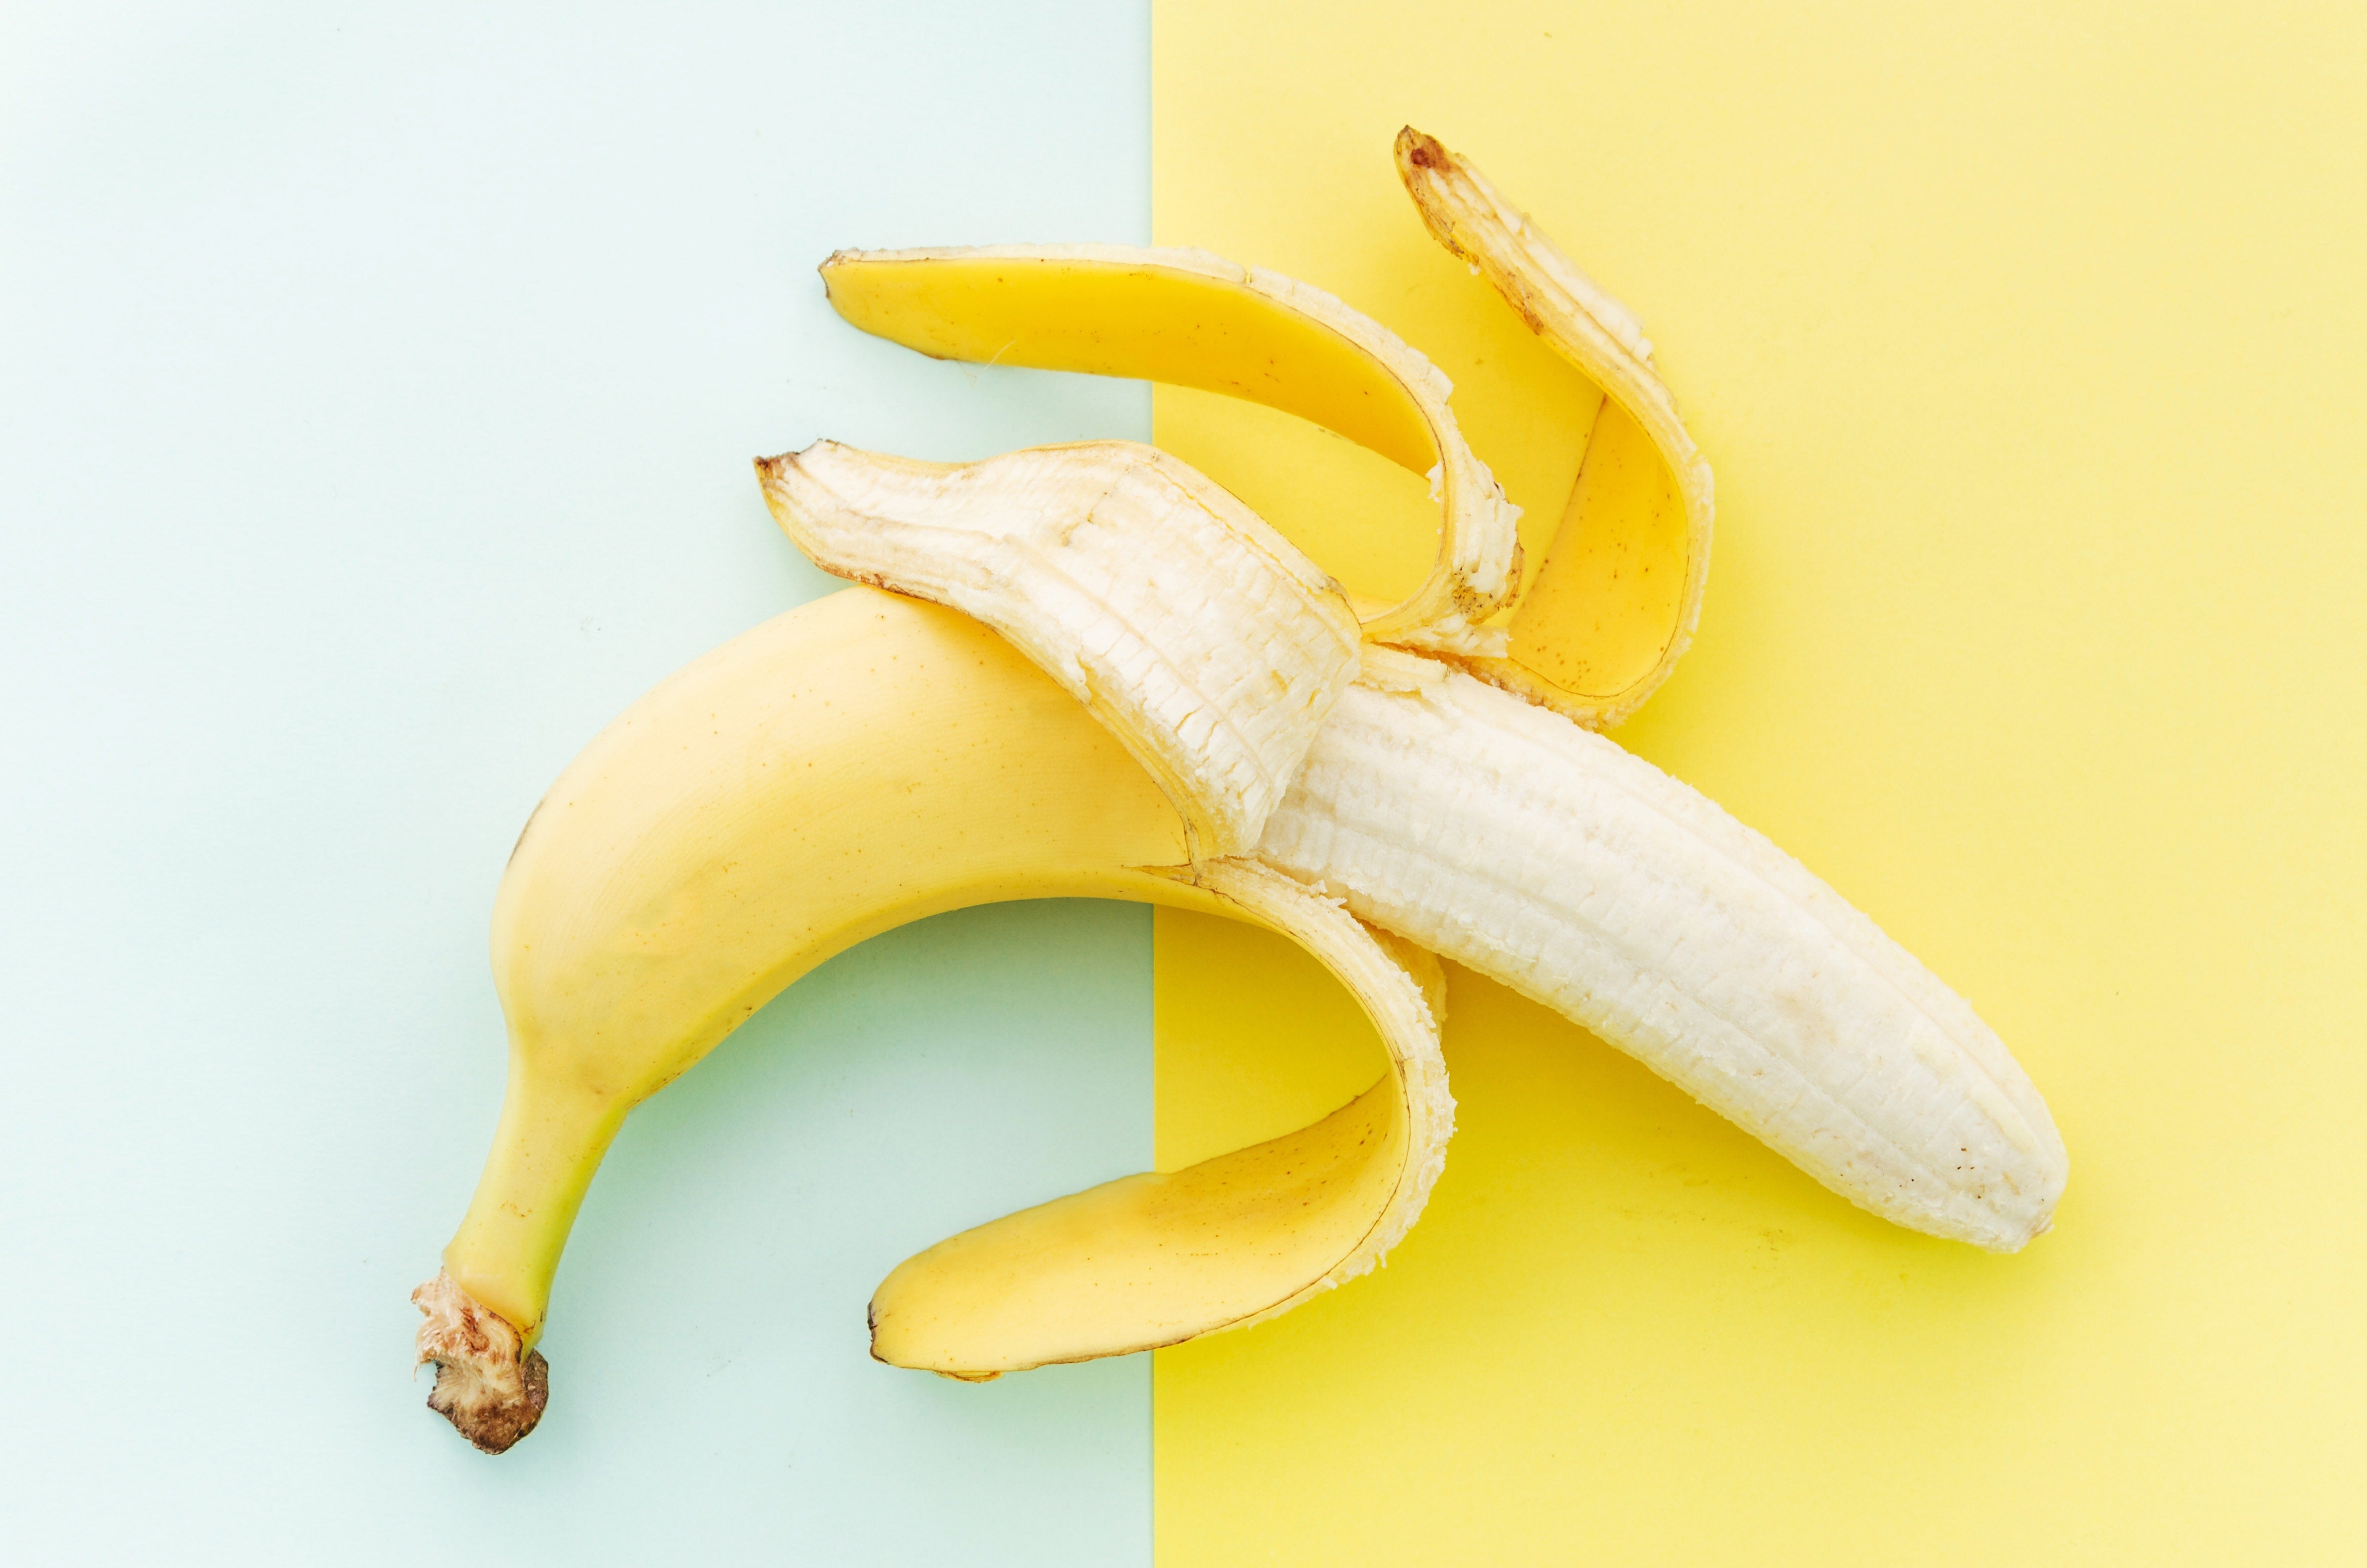 Banene su win-win kombinacija kada se radi o namirnicama koje podstiču san. Sadrže kalijum, magnezijum, triptofan, ali i ugljene hidrate, tako da će na vaš organizam delovati kao uspavanka. Ukoliko preferirate smutije, obavezno uz banane ubacite i višnje koje su bogate melatoninom, i mleko koje sadrži triptofan.